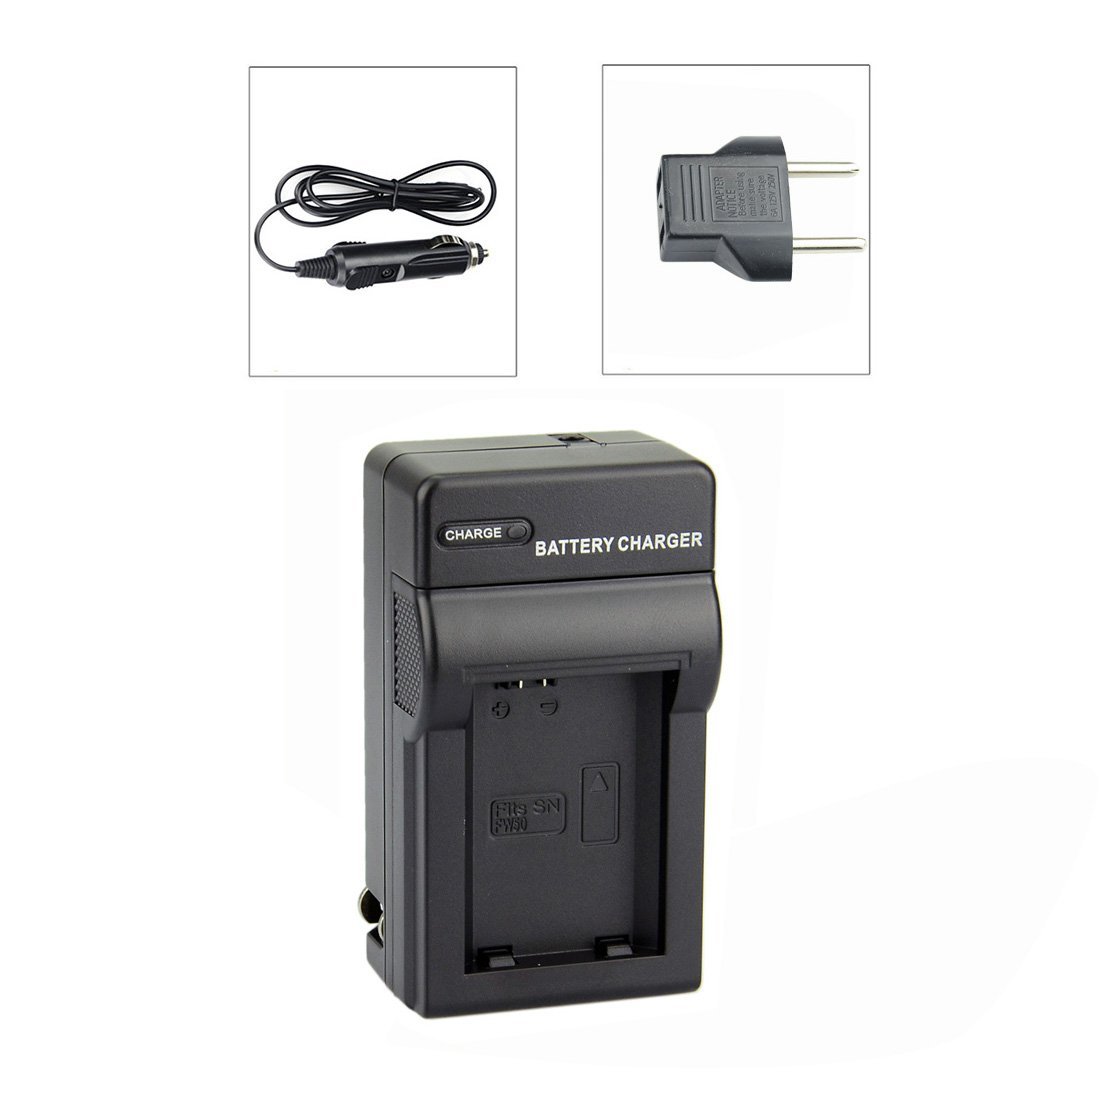 Kit Bateria + Carregador NP-FW50 1000mAh para câmera digital e filmadora Sony NEX-3, NEX-3A, NEX-3D, NEX-5, NEX-5K